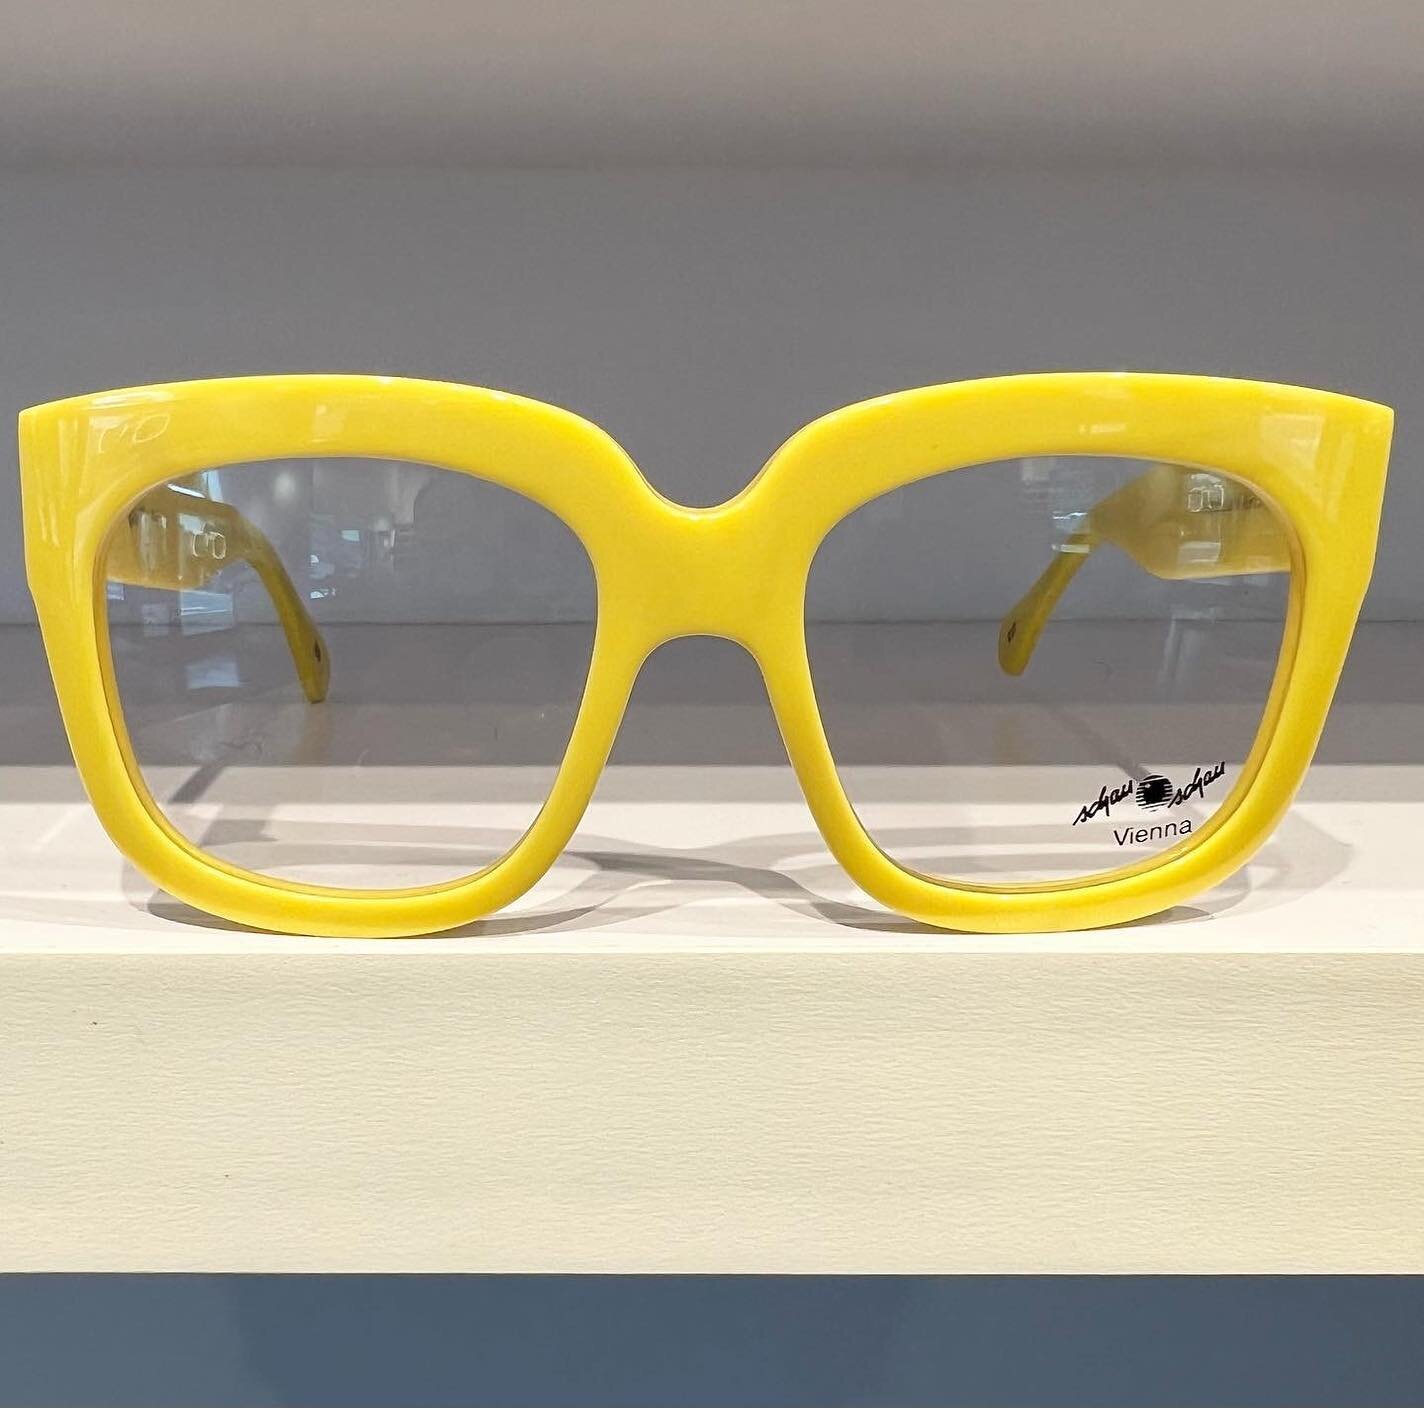 🚨 New Schau Schau frames are here 🚨 // #otticaseattle #schauschaubrillen